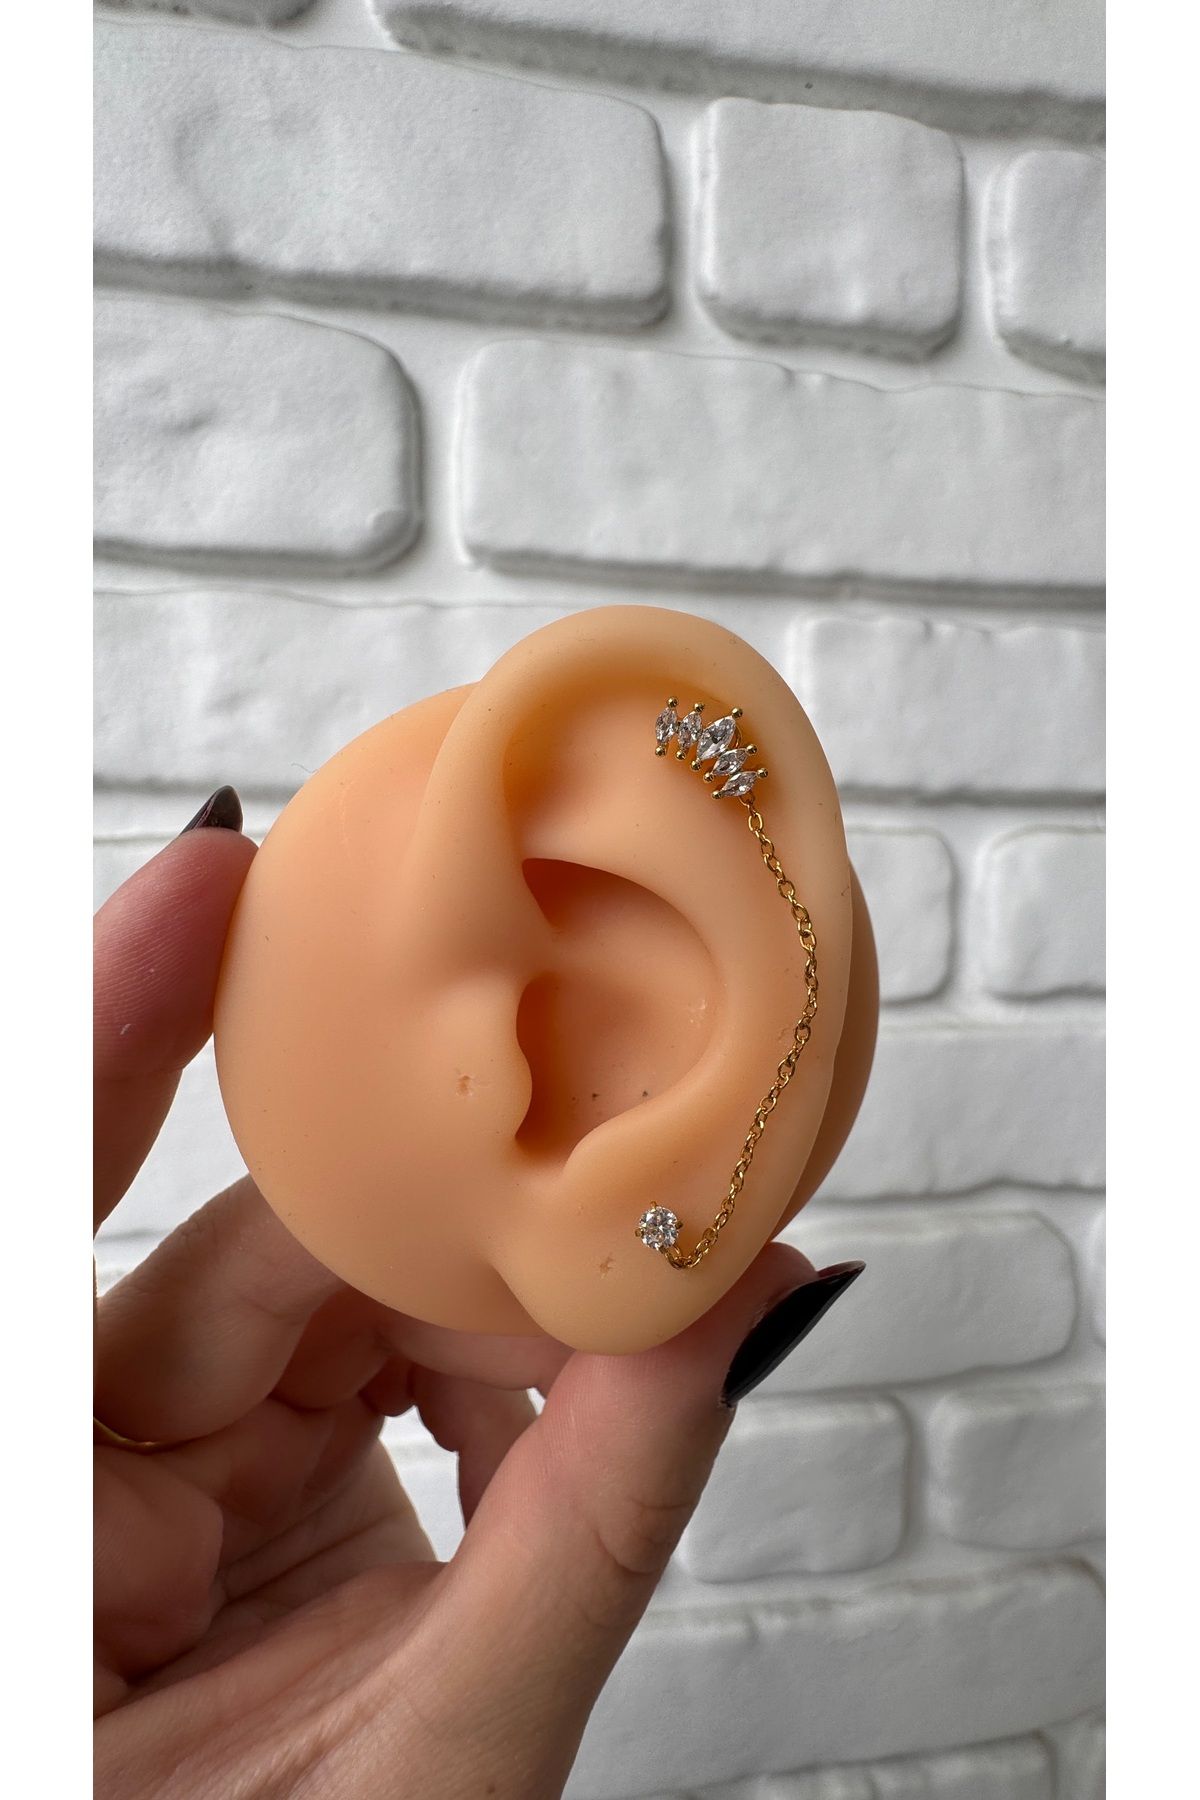 alysa jewelry cerrahi çelik zincirli piercing lobe-helix-tragus-kıkırdak